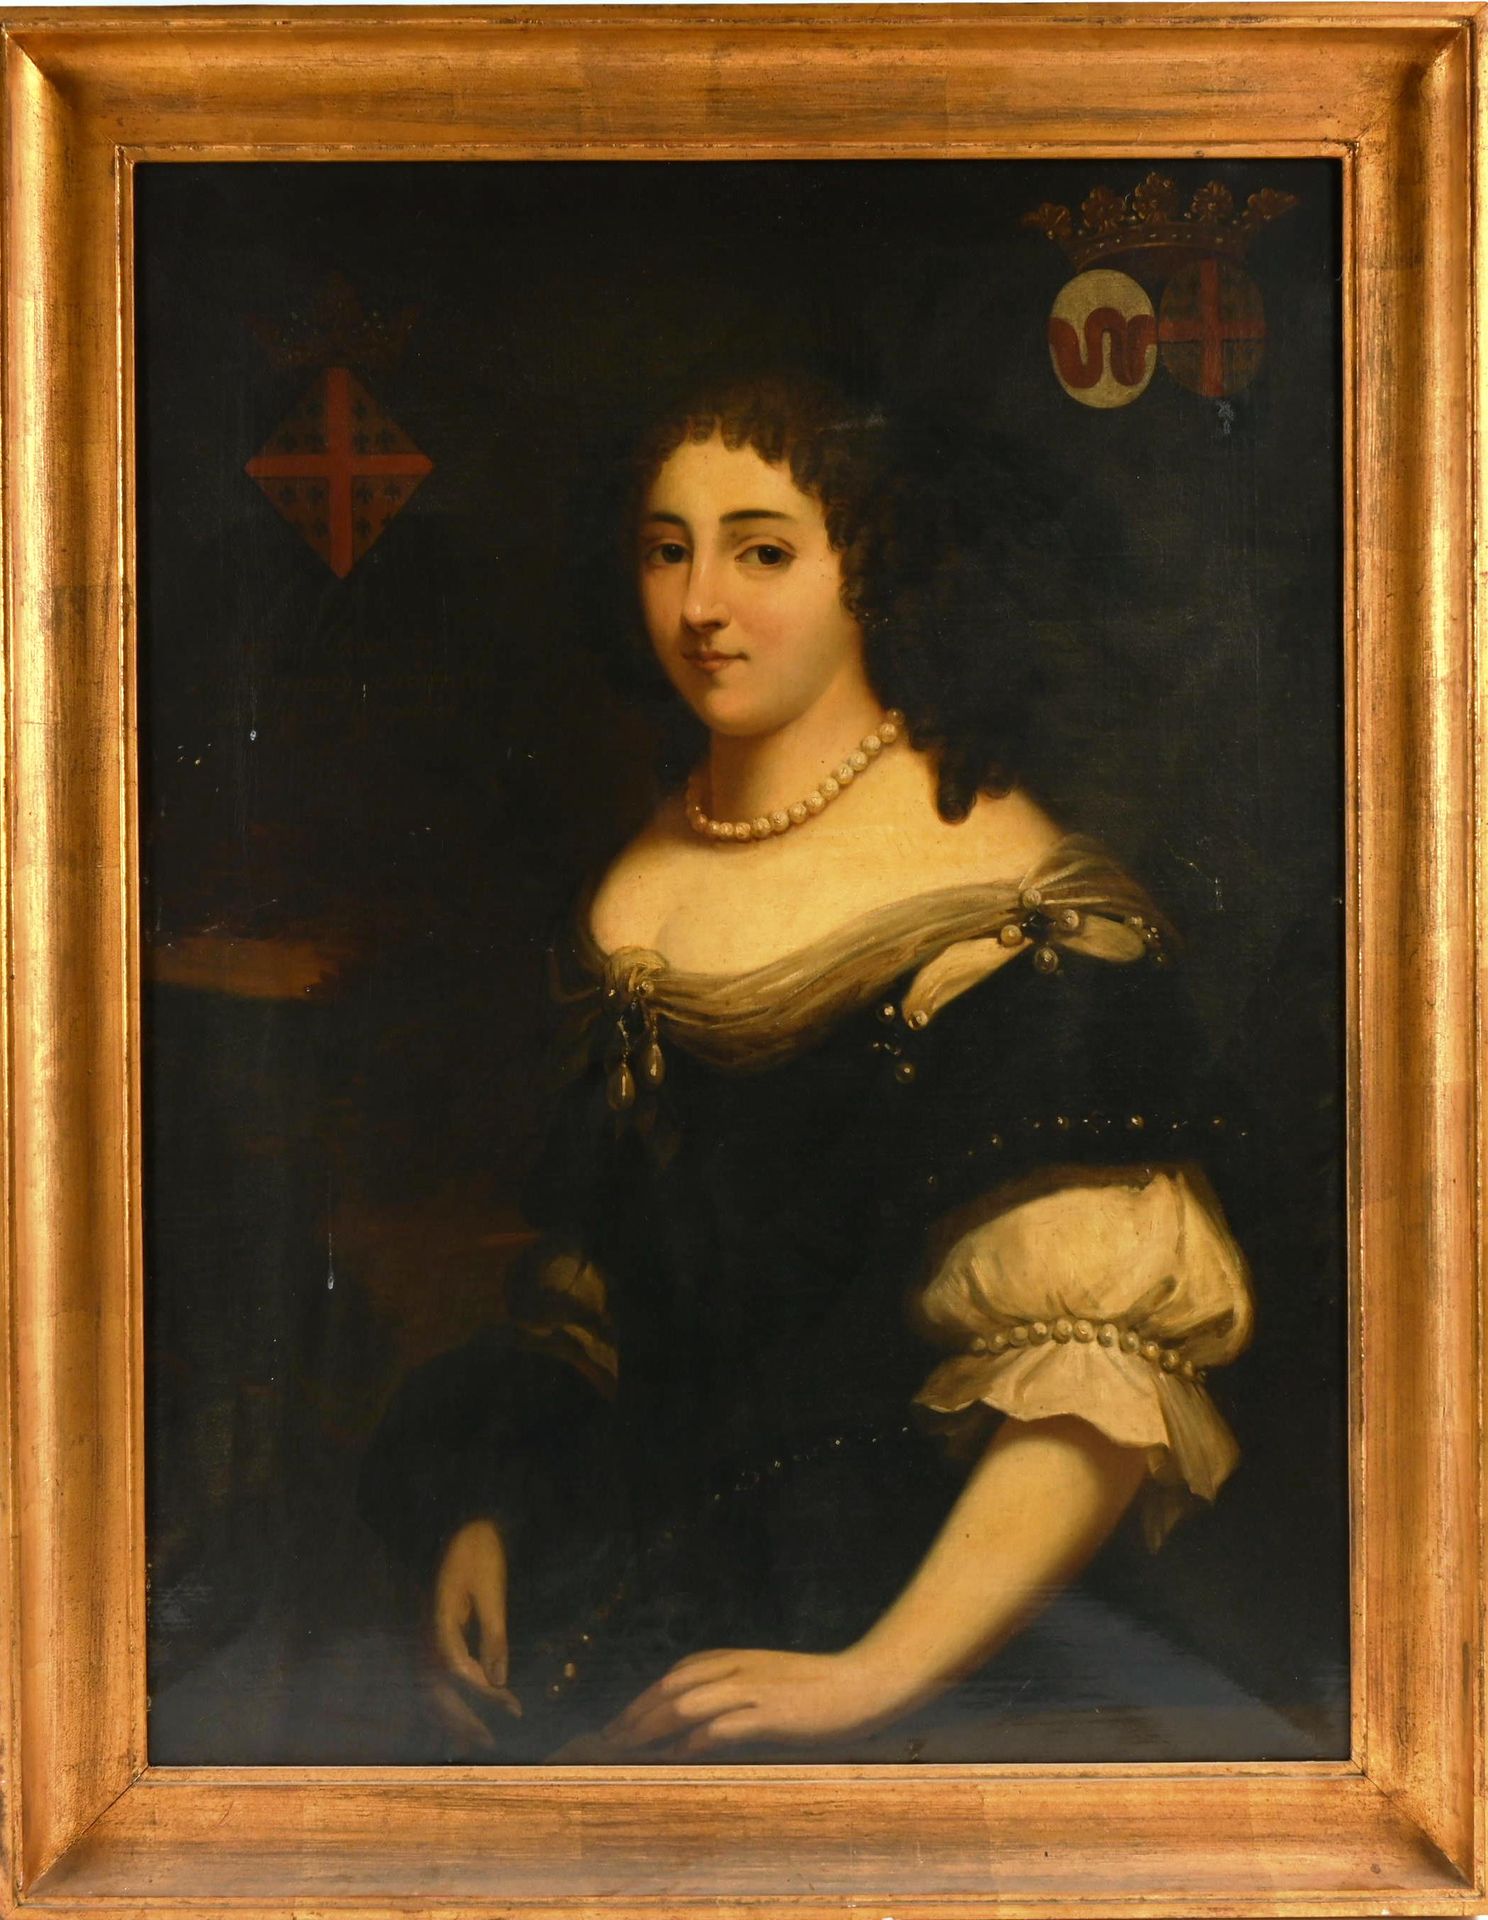 Comtesse de Groesbeek, Portrait. Scuola fiamminga della fine del XVII secolo.

"&hellip;